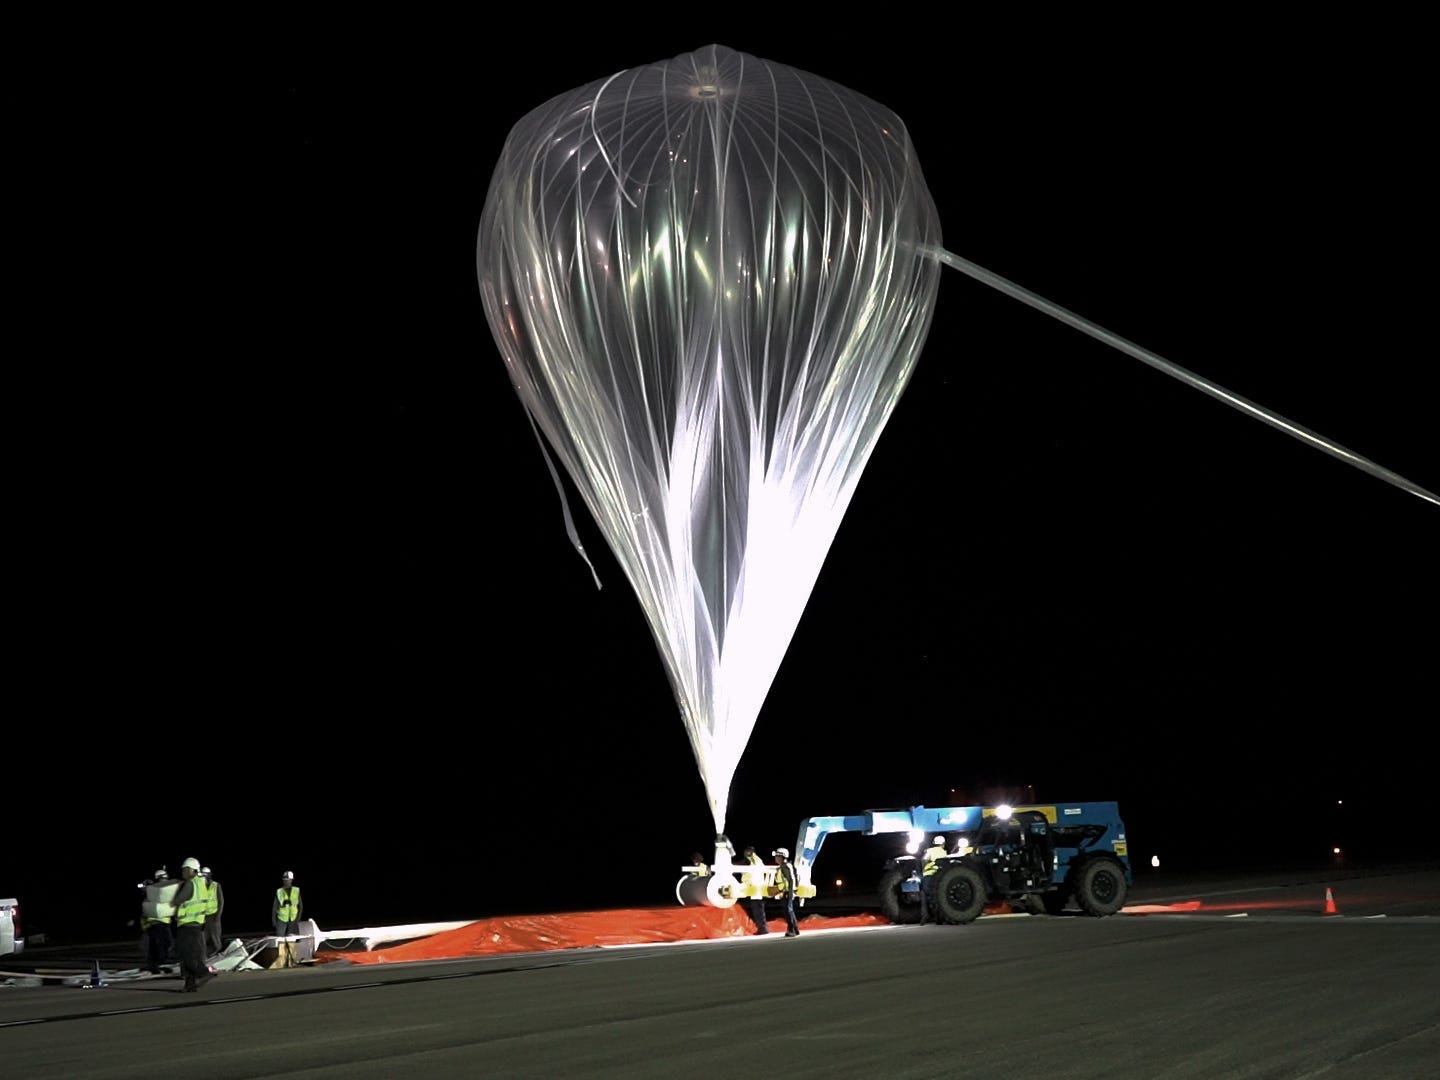 Eine Besatzung hisst nachts einen großen, durchsichtigen Ballon